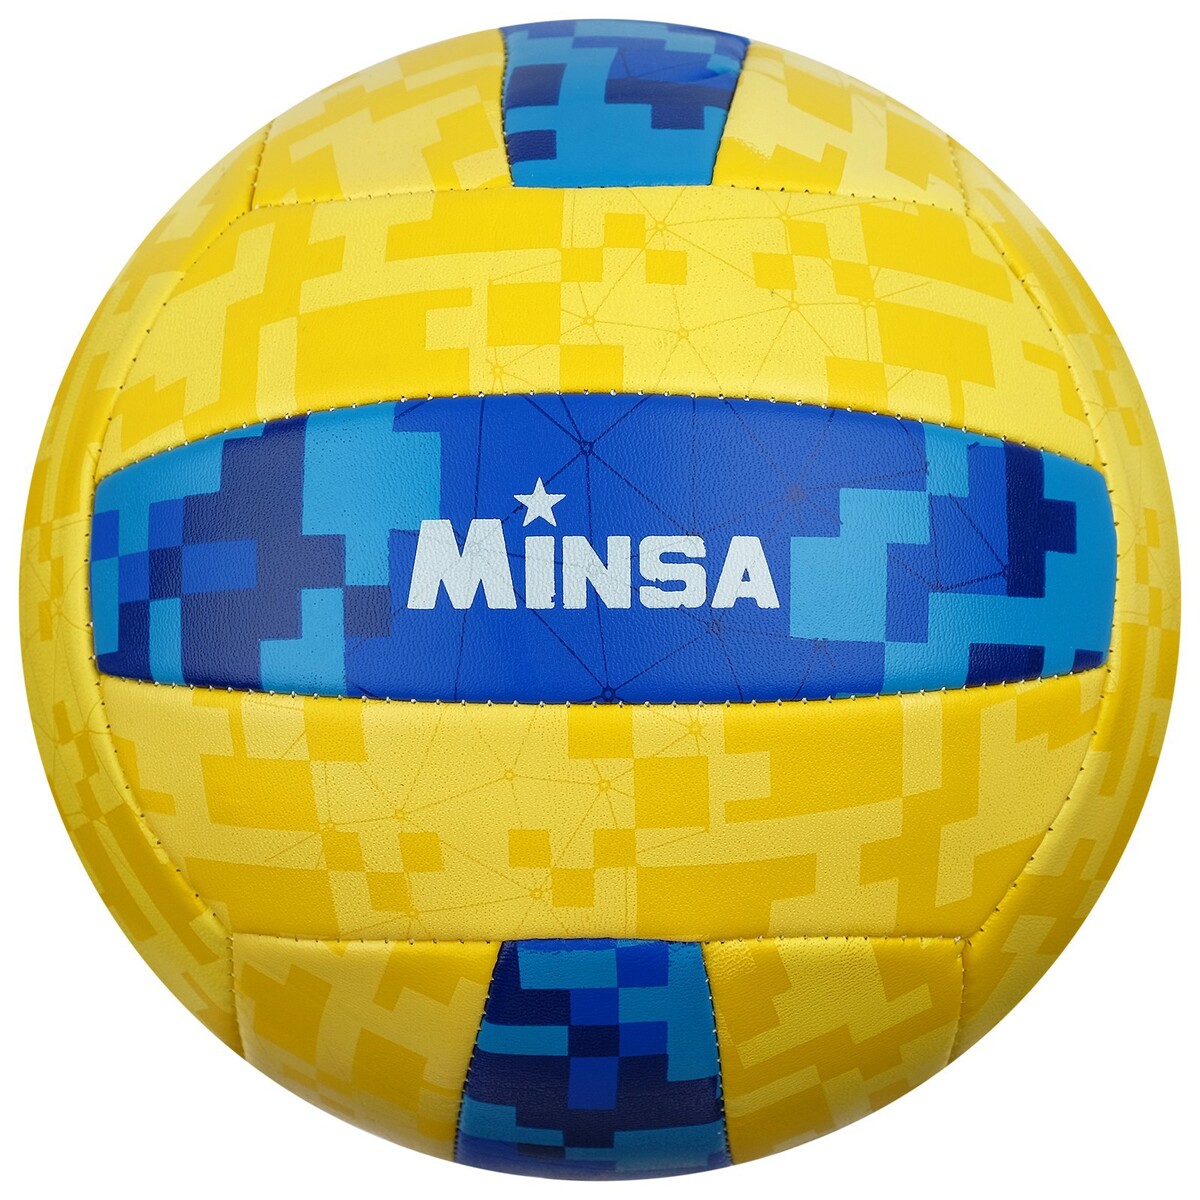 фото Мяч волейбольный minsa, пвх, машинная сшивка, 18 панелей, р. 5